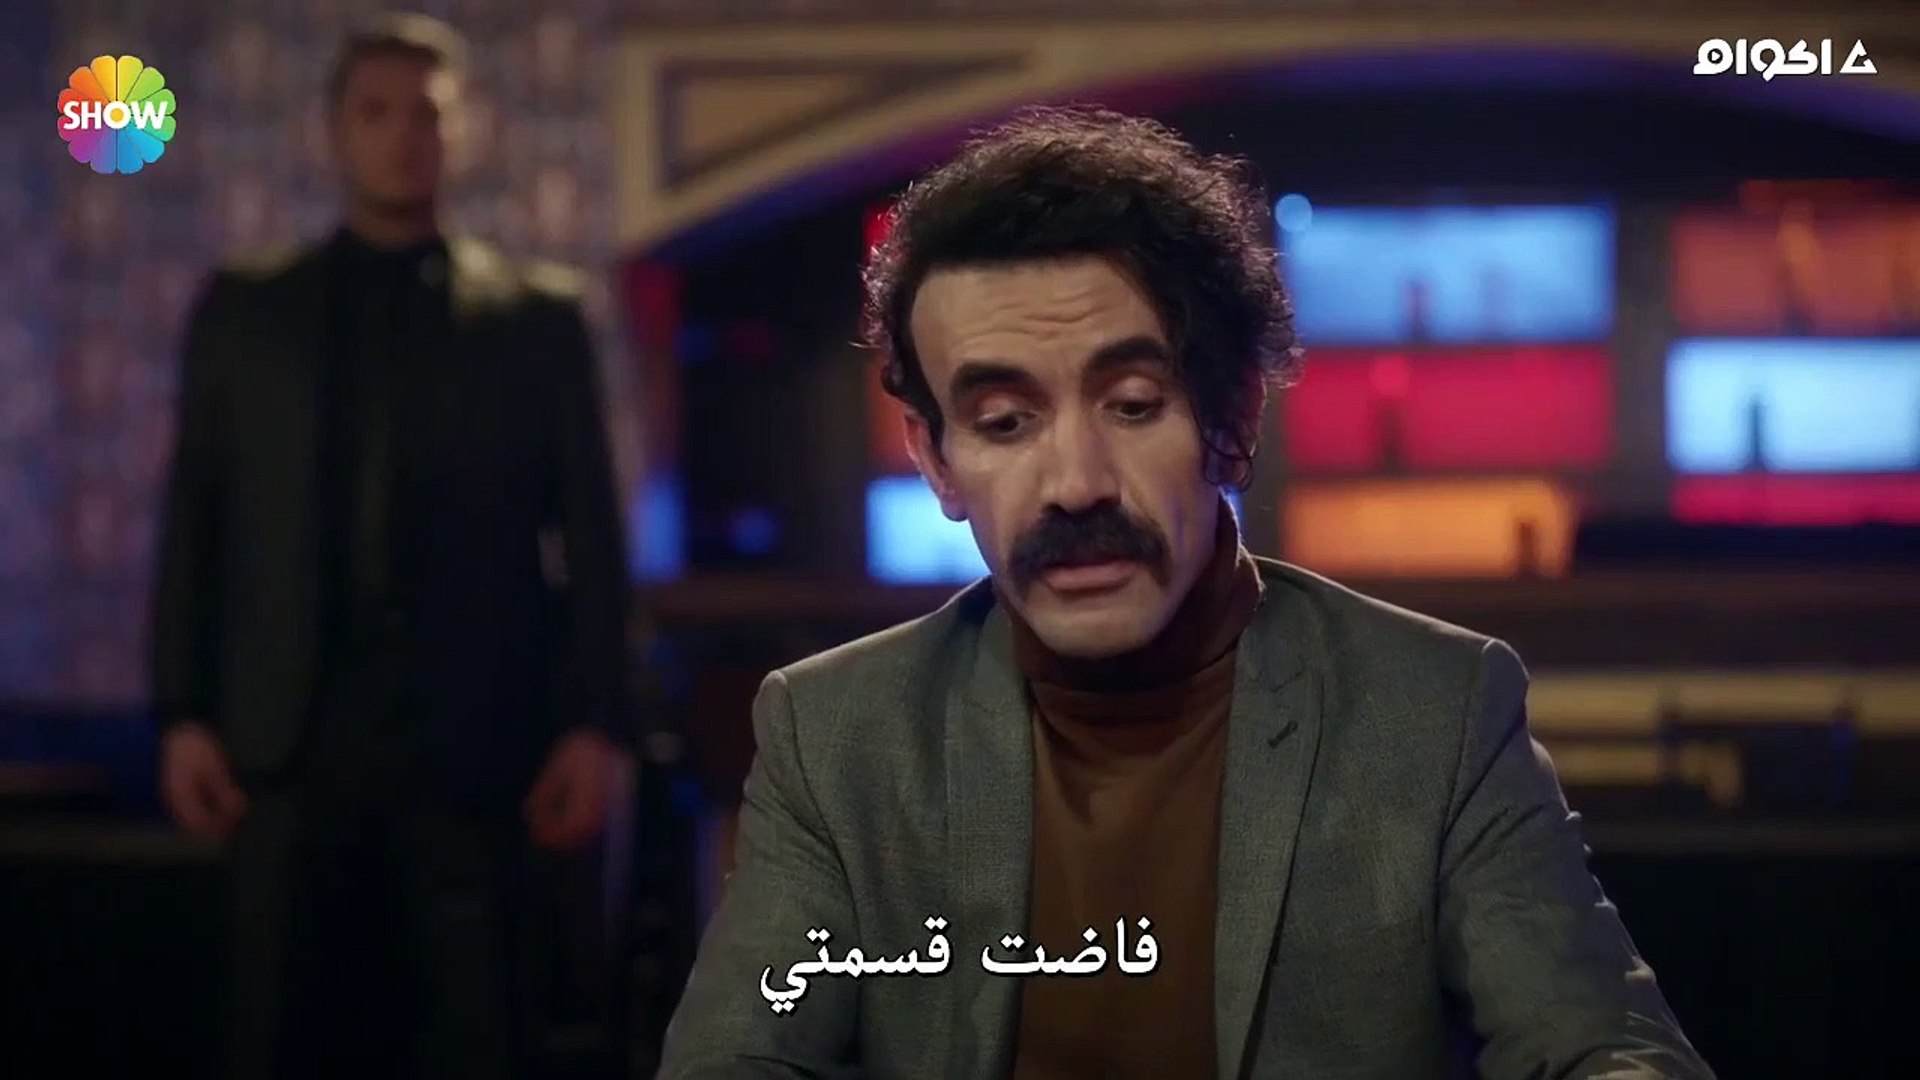 مسلسل رامو الحلقة 24 كاملة مترجمة القسم 3 مترجمة للعربية - video Dailymotion